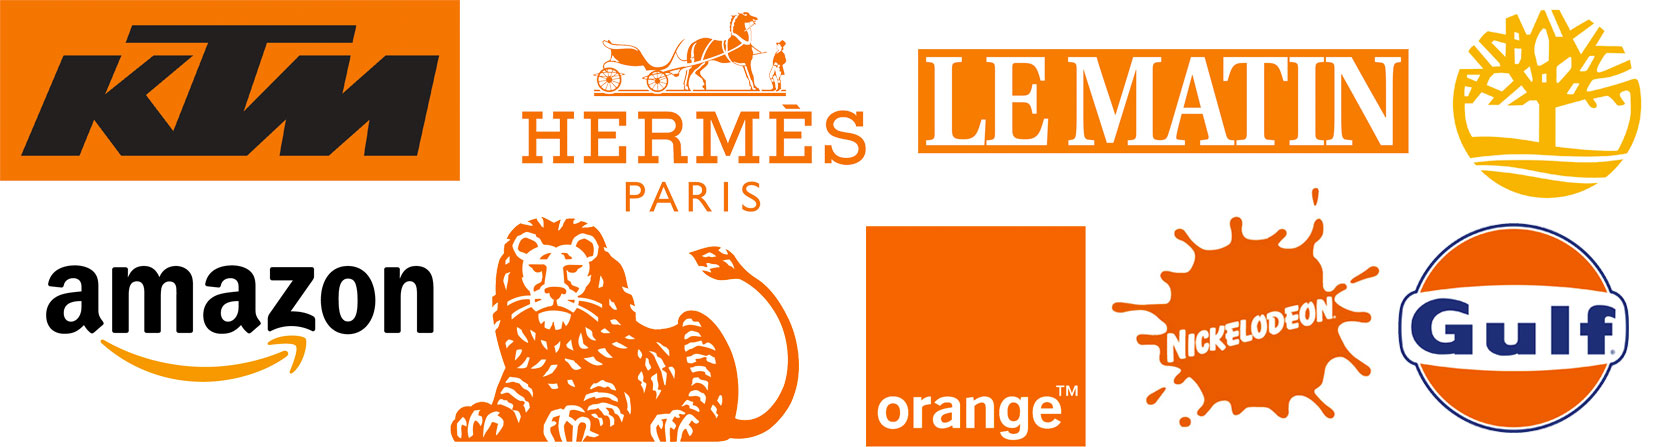 Logos Orange